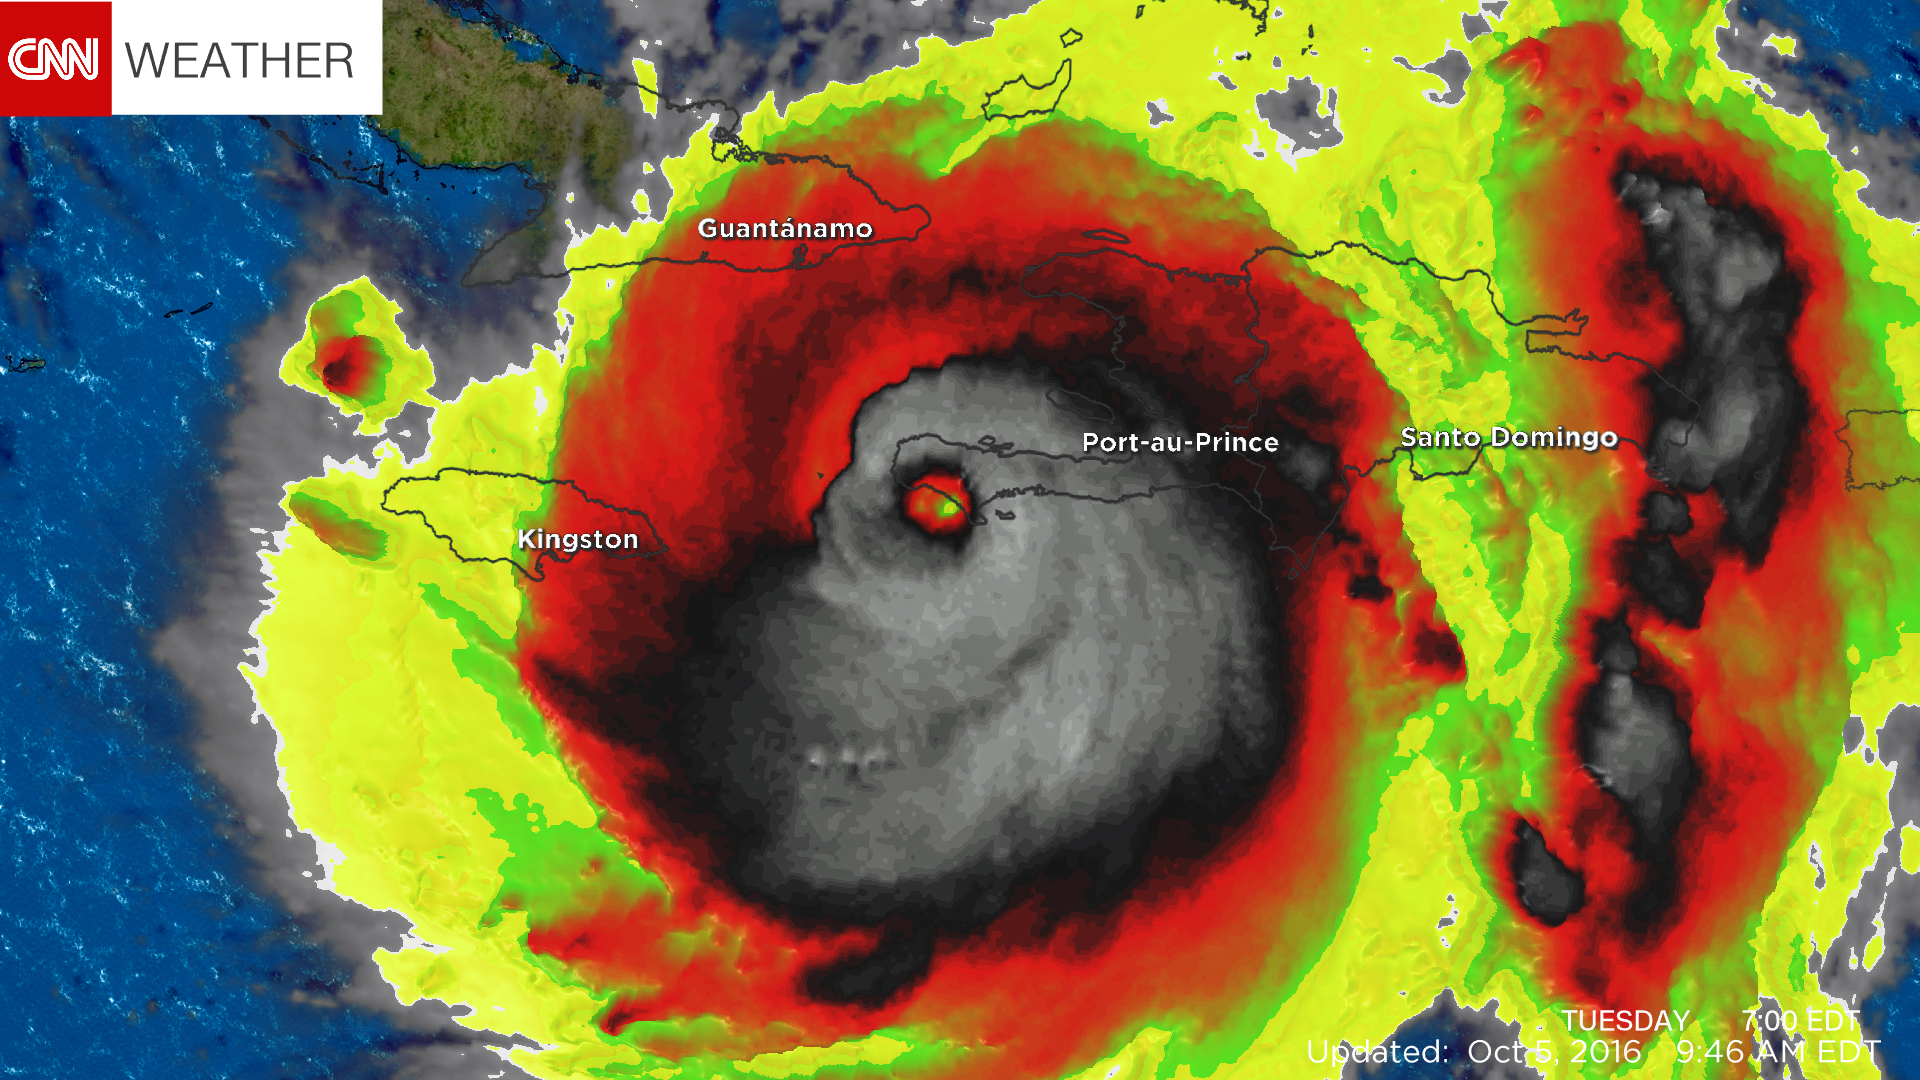 Skull image of Hurricane Matthew spooks the Internet - CNN